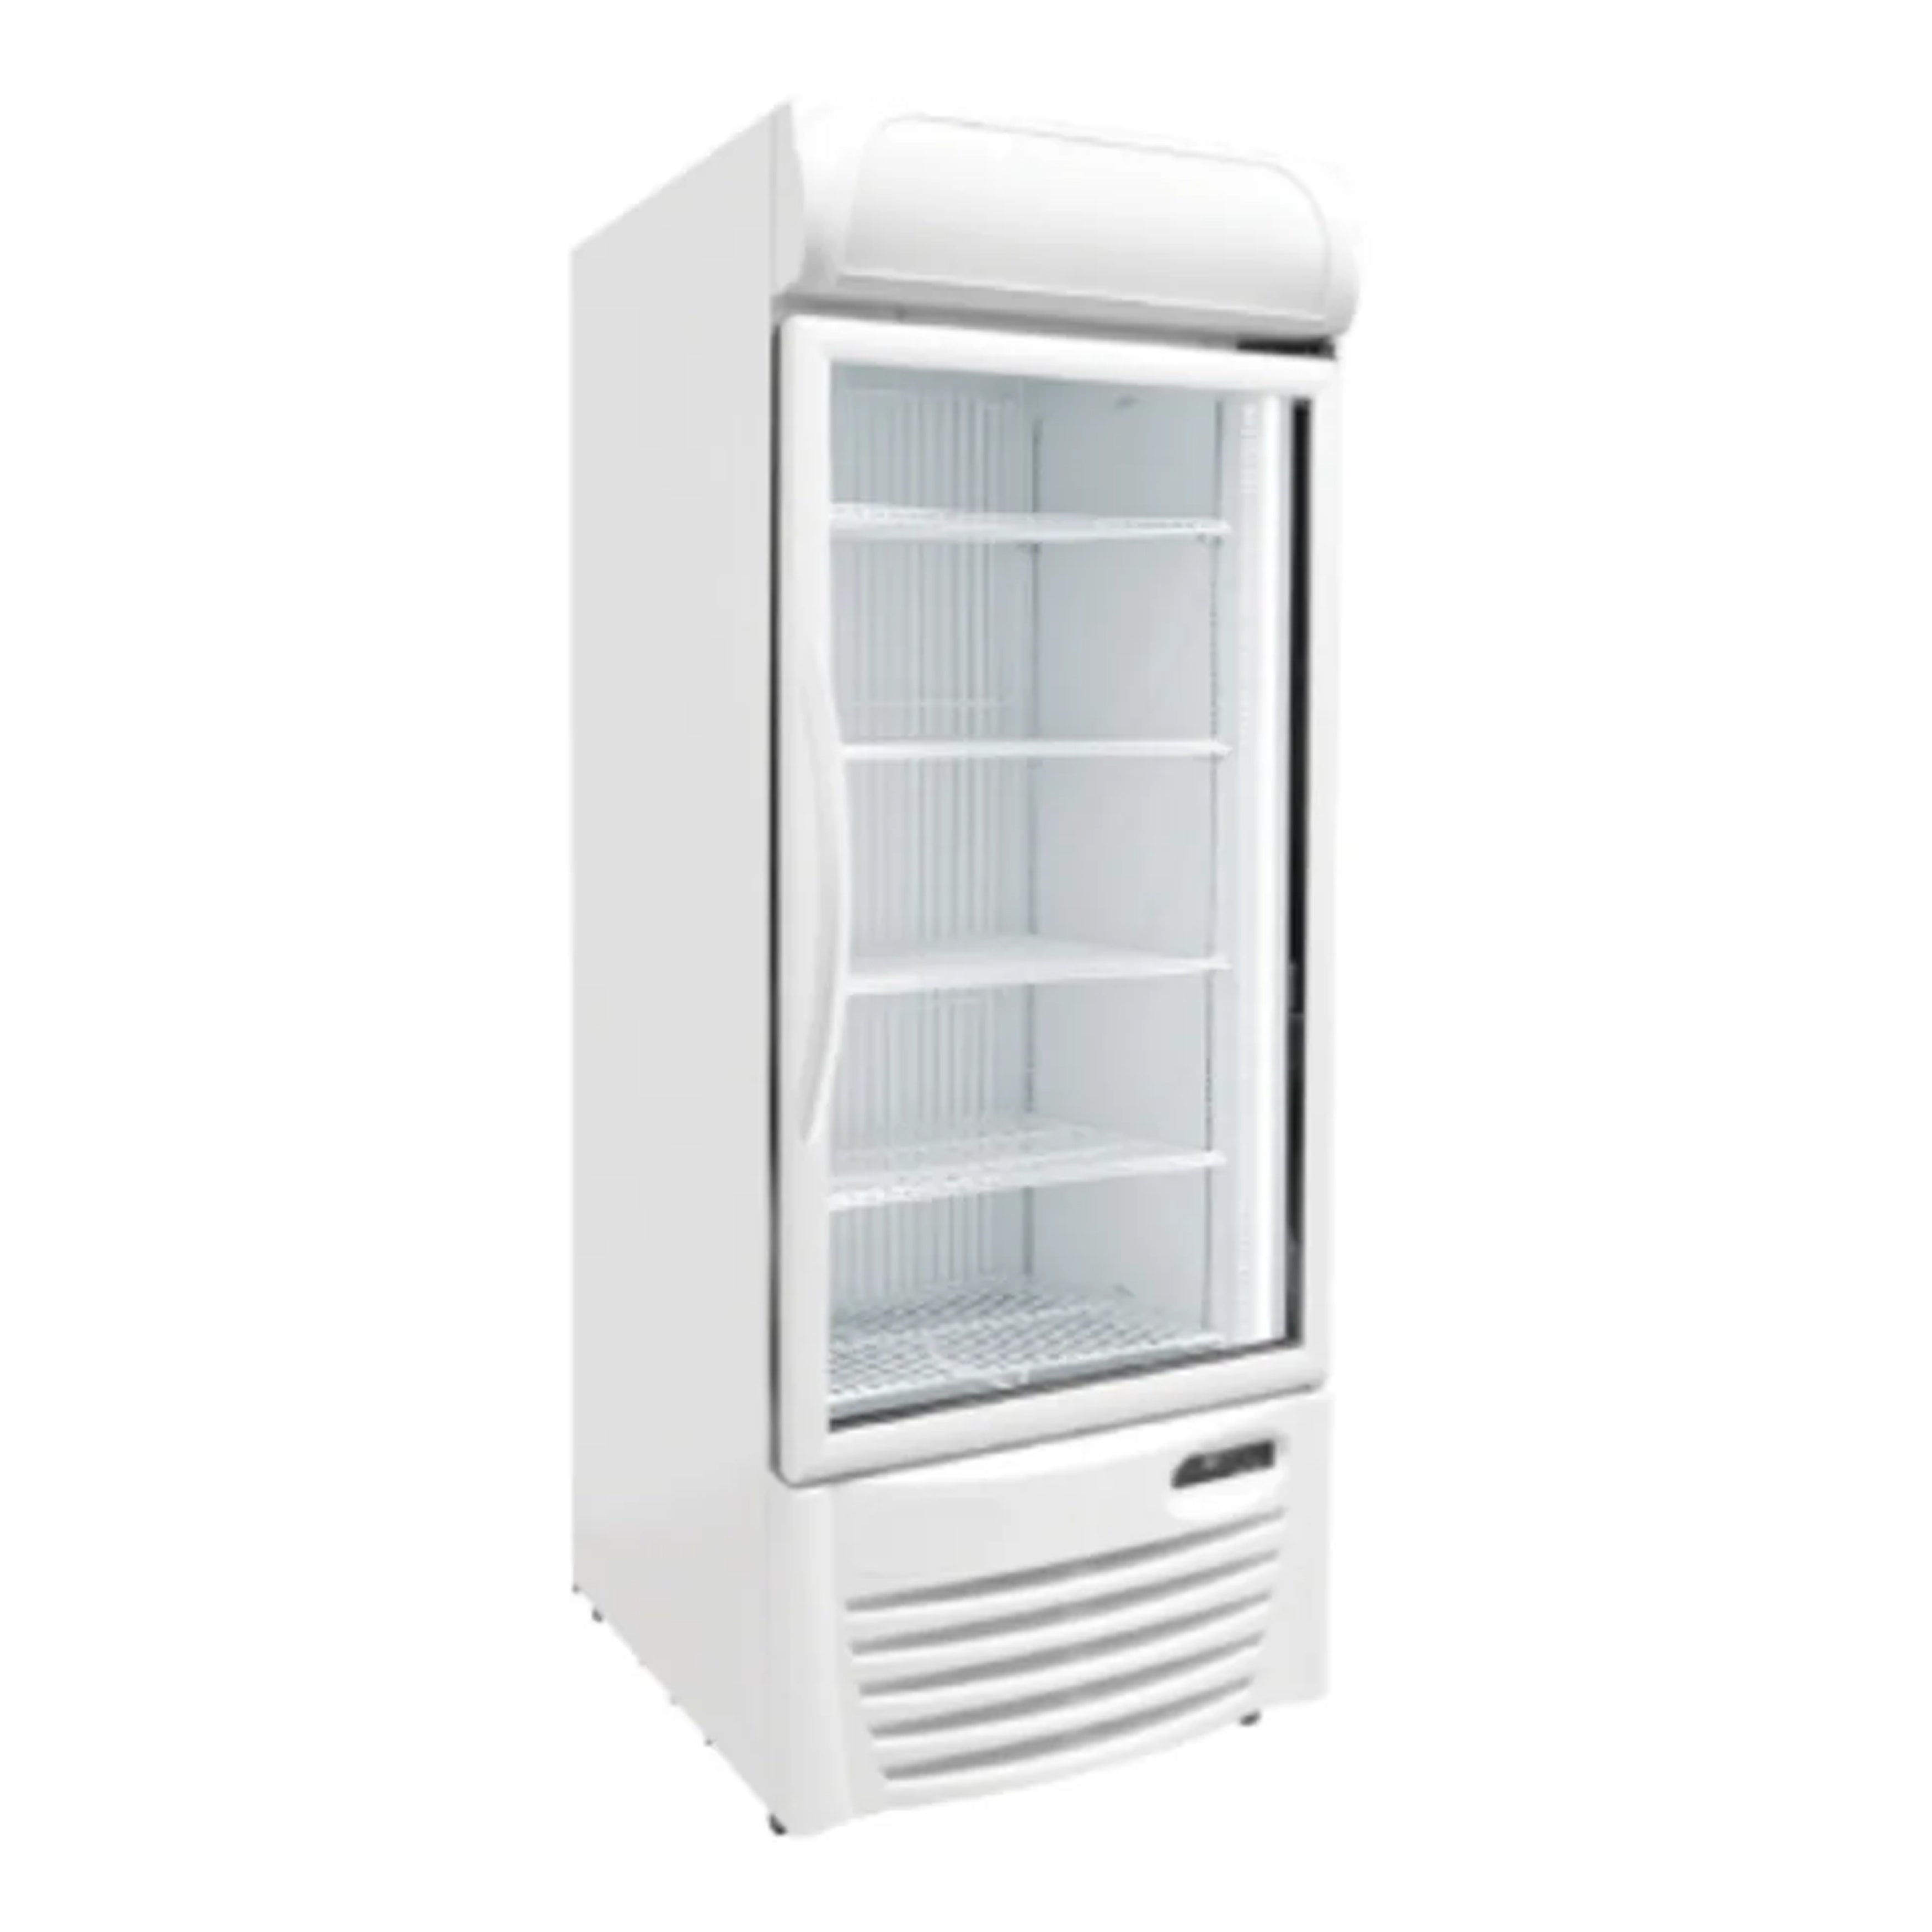 Excellence Industries - GDF-22, 30" Commercial 1 Glass Door Merchandiser Refrigerator 22.7 cu.ft.